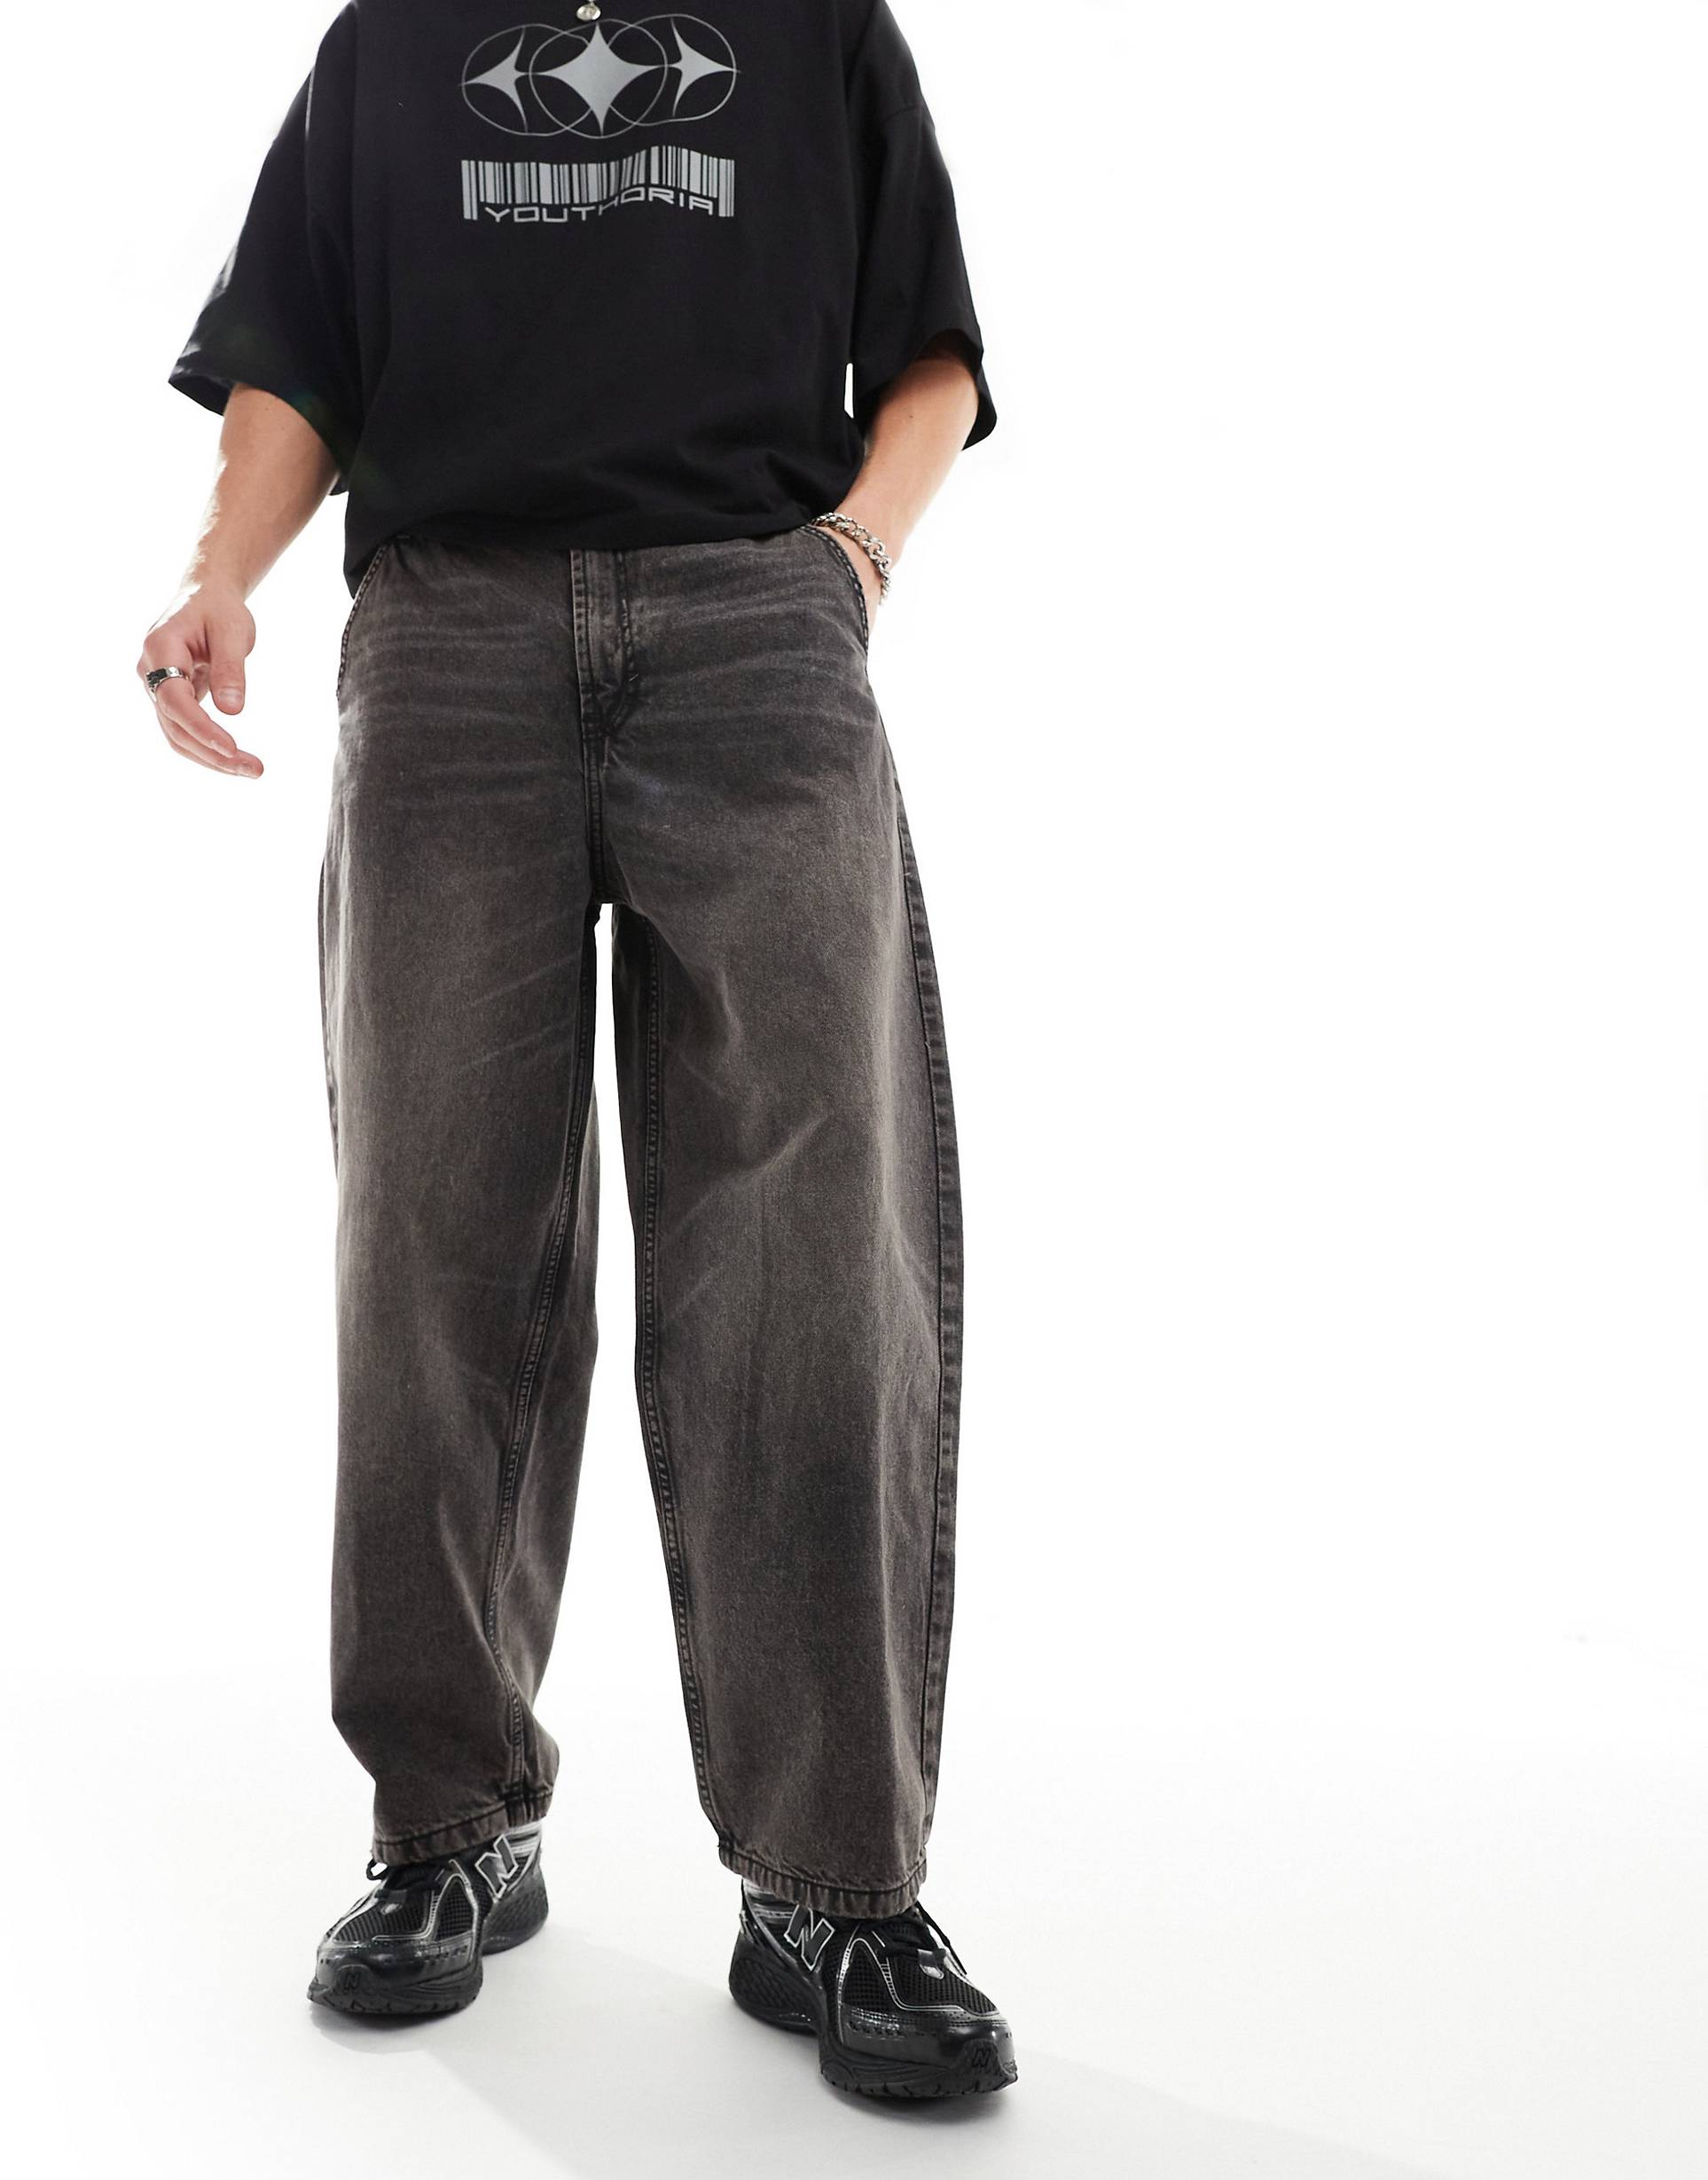 Джинсы Bershka Skater Fit Casted, коричневый джинсы bershka с потертостями 42 размер новые